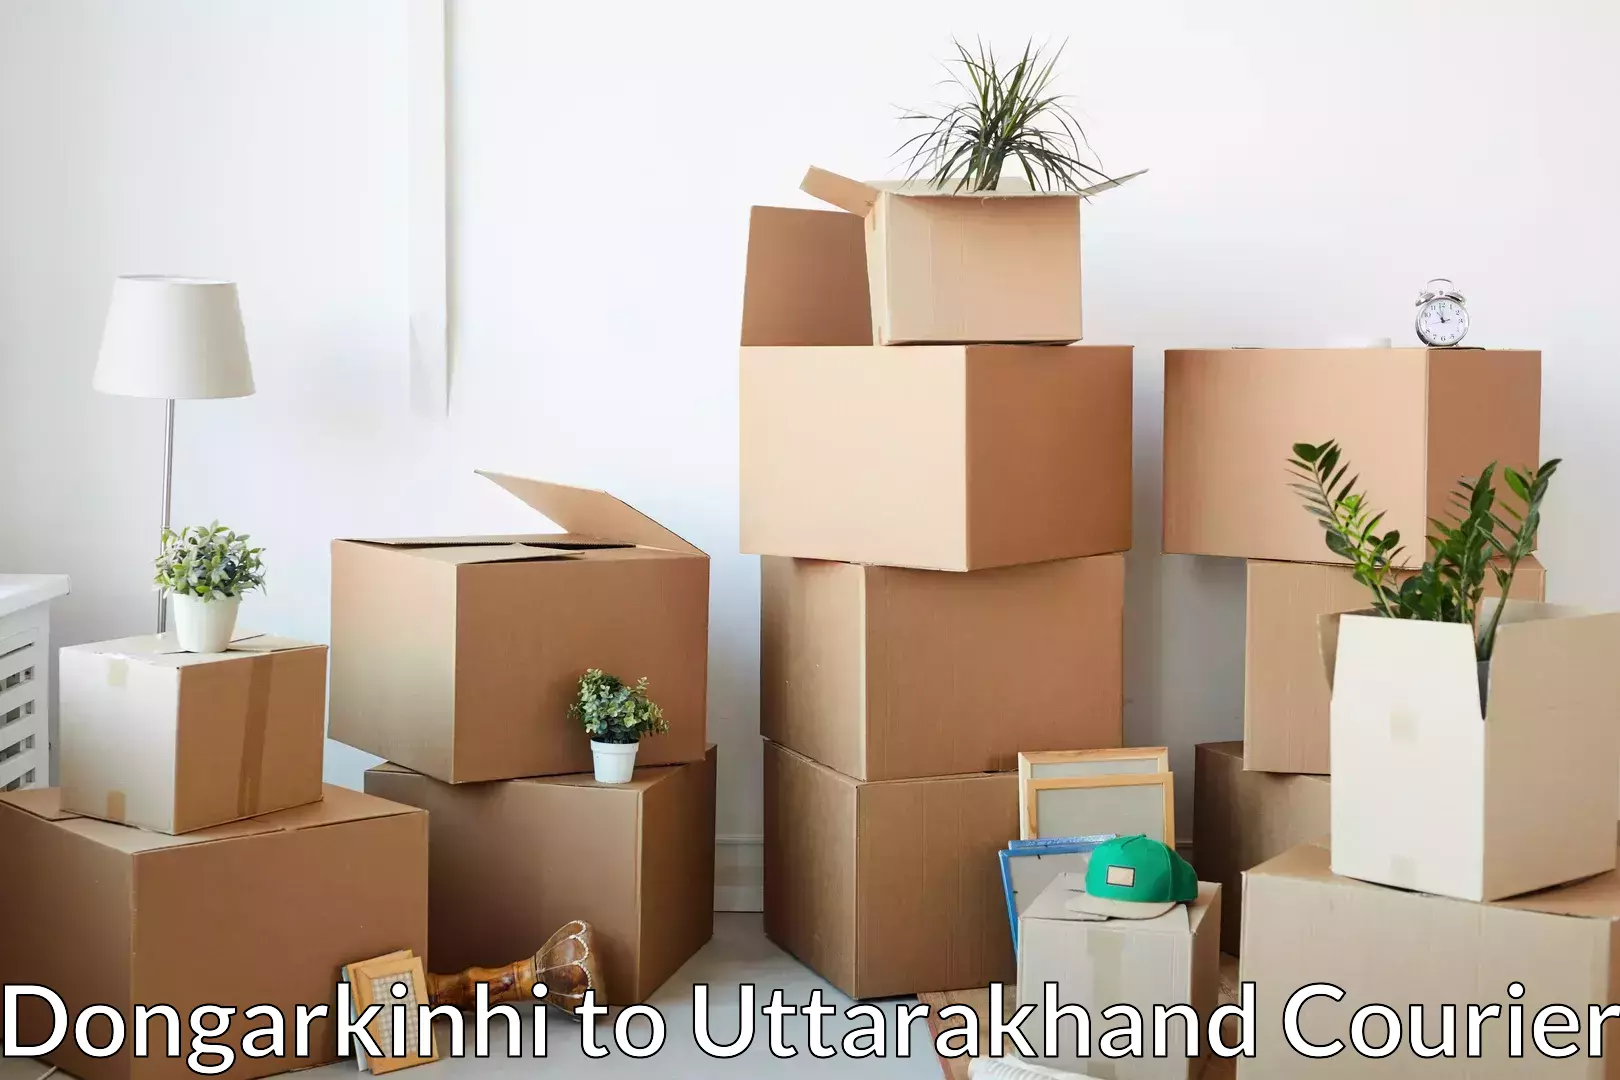 Skilled furniture transporters Dongarkinhi to Pithoragarh